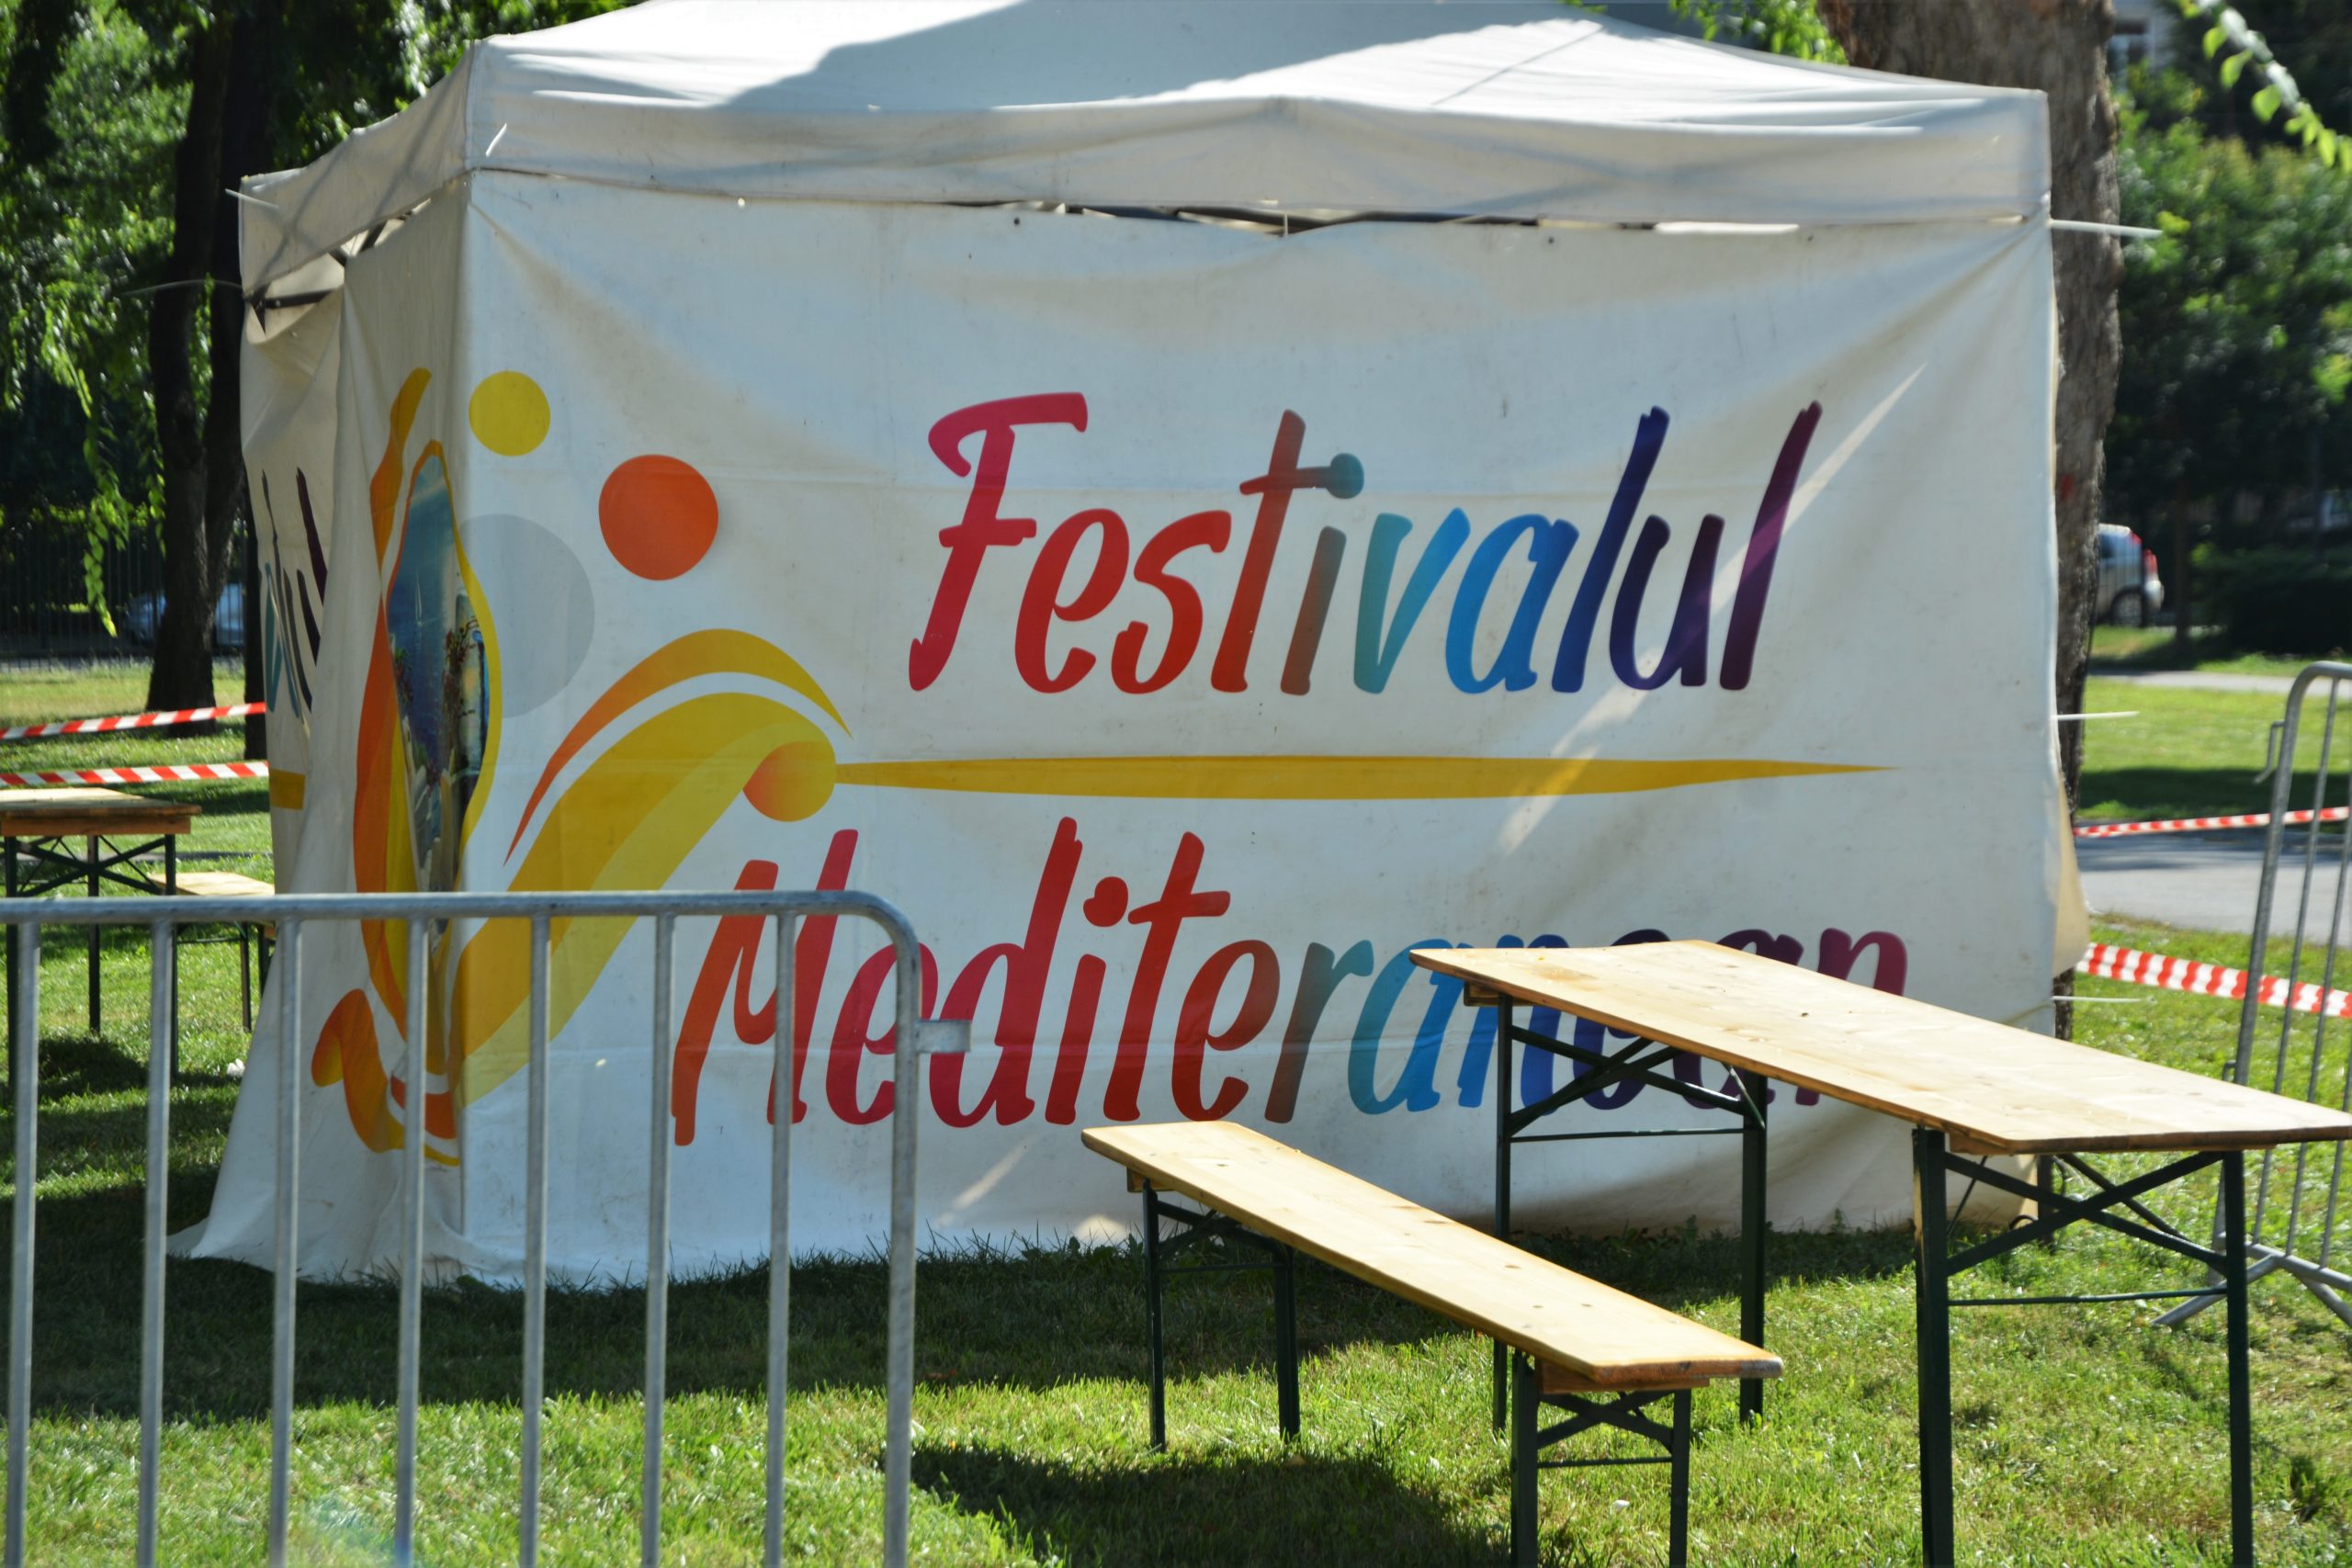 Festivalul Mediteranean oradea (6)